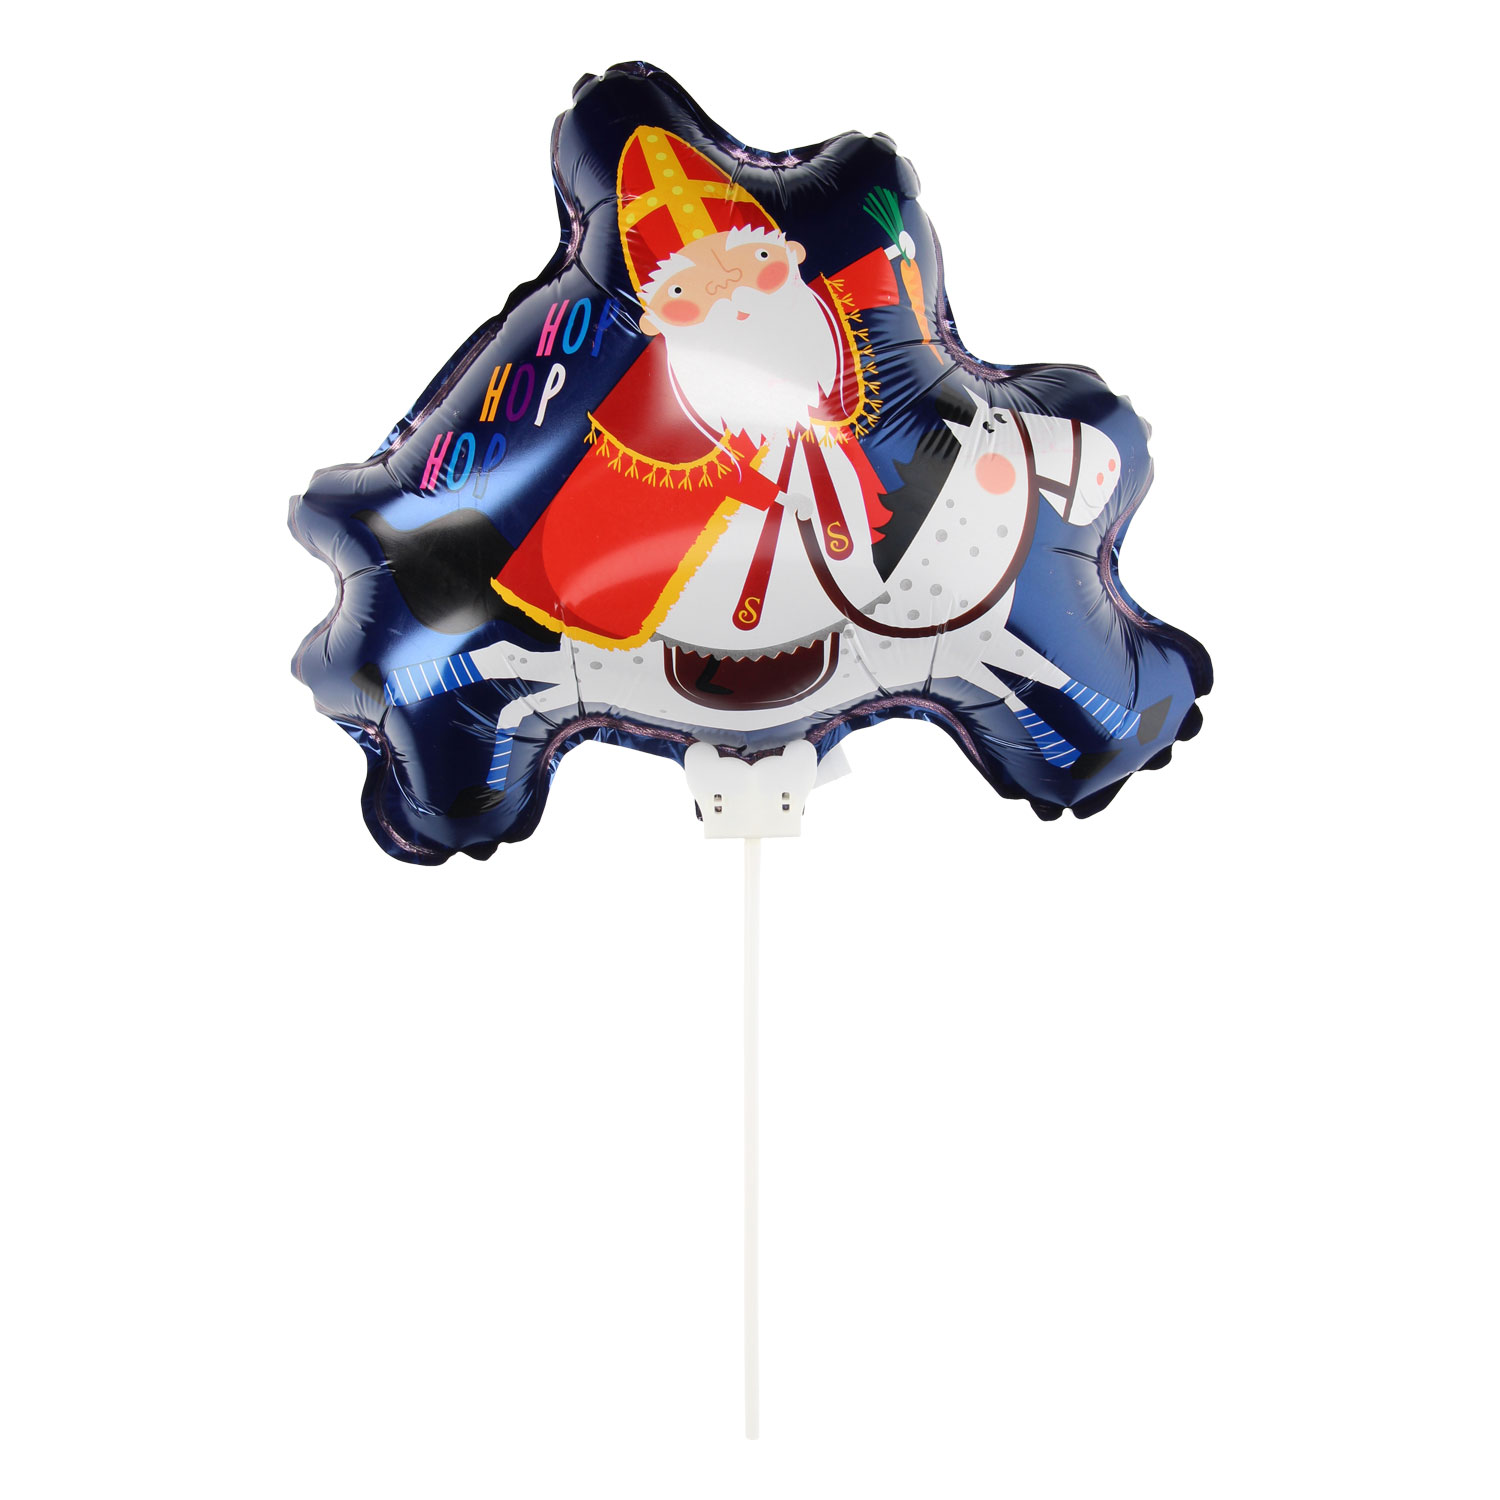 Grote Sinterklaas Folieballon - Heliumballon - XL Ballon Sint Nicolaas - Sinterklaas Versiering - Sinterklaas Feest - Folieballon 1 stuks - Sint & Piet Ballonnen - Sinterklaas Fees